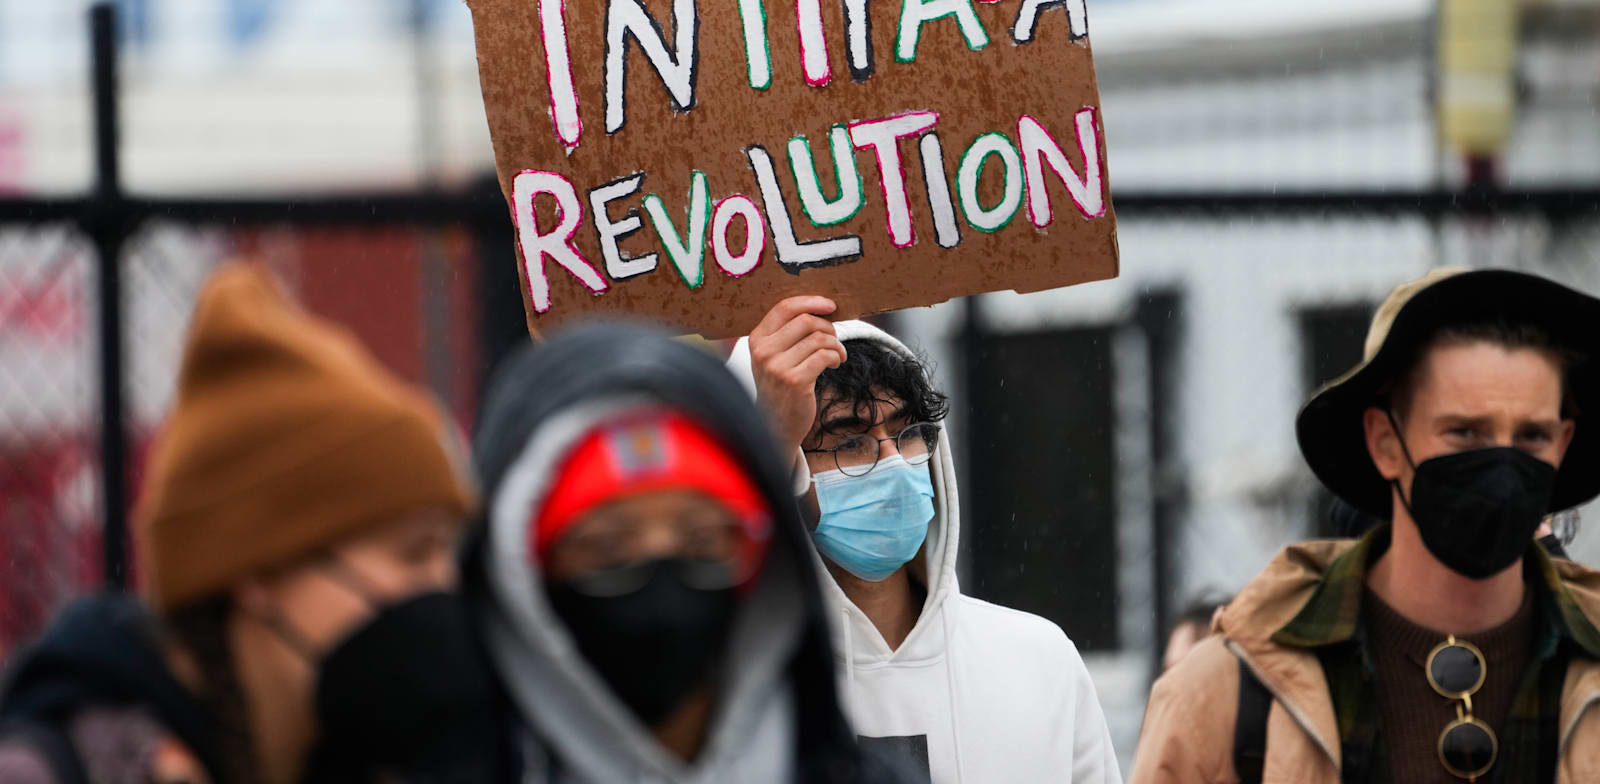 מפגין מניף שלט עם ''מהפכת אינתיפאדה'' בוושינגטון. תמיכות מפורשות באלימות / צילום: Associated Press, Lindsey Wasson